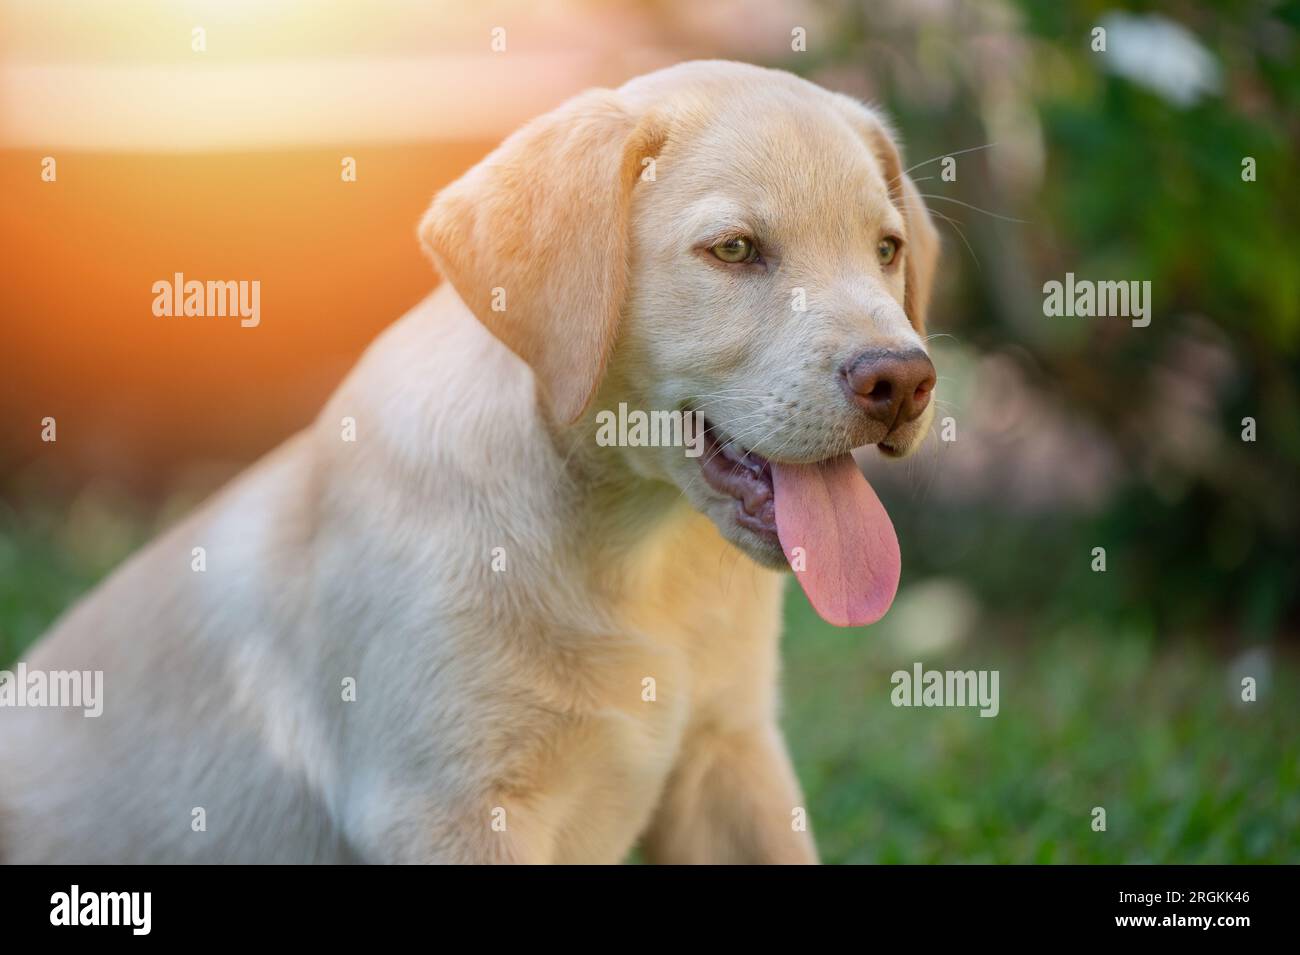 Ritratto del cucciolo di labrador con la lingua fuori su sfondo sfocato del giardino Foto Stock